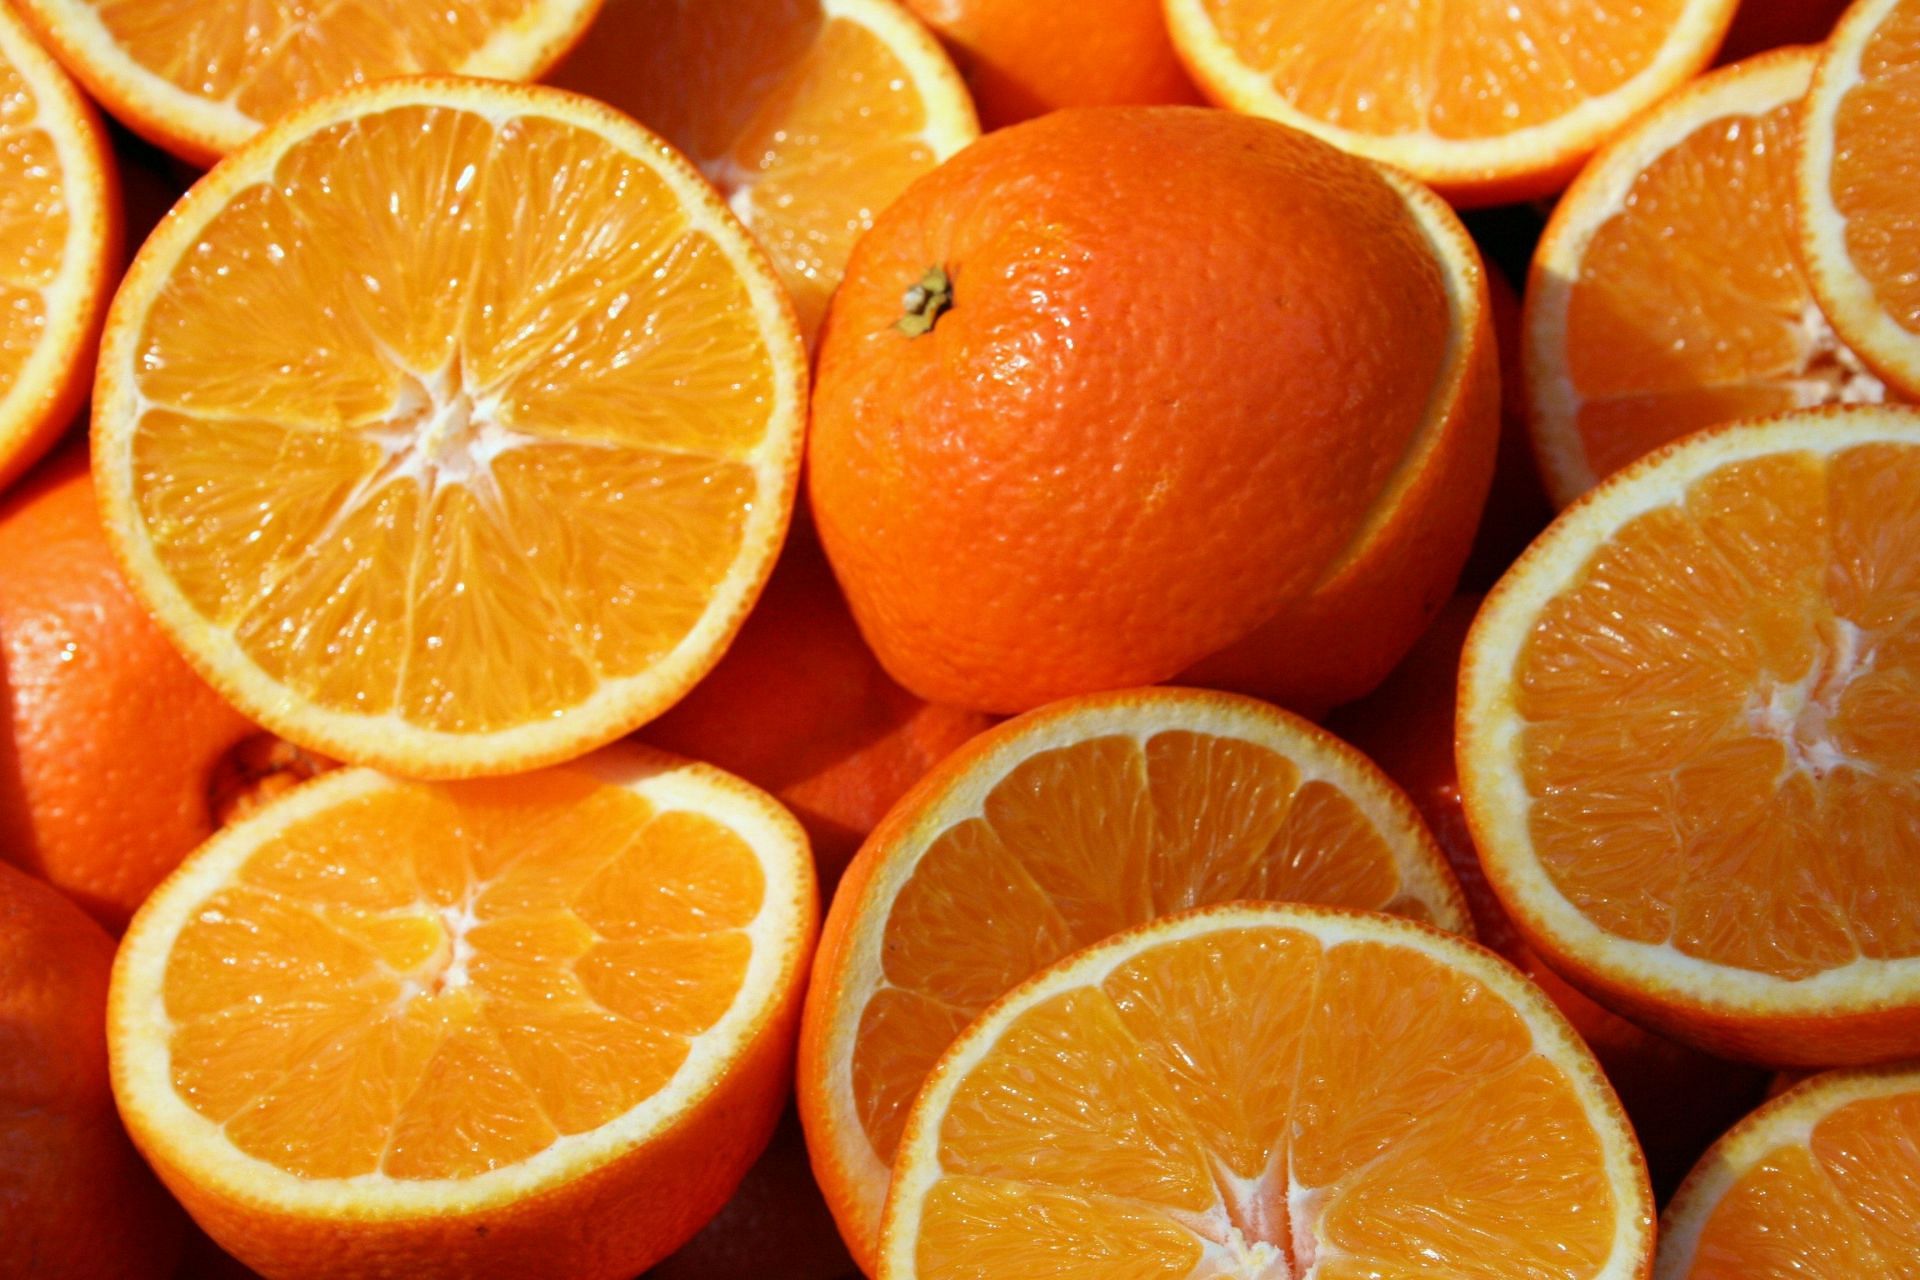 Lycopene is among the nutrients in orange. (Image via Unsplash/Sheraz Shaikh)